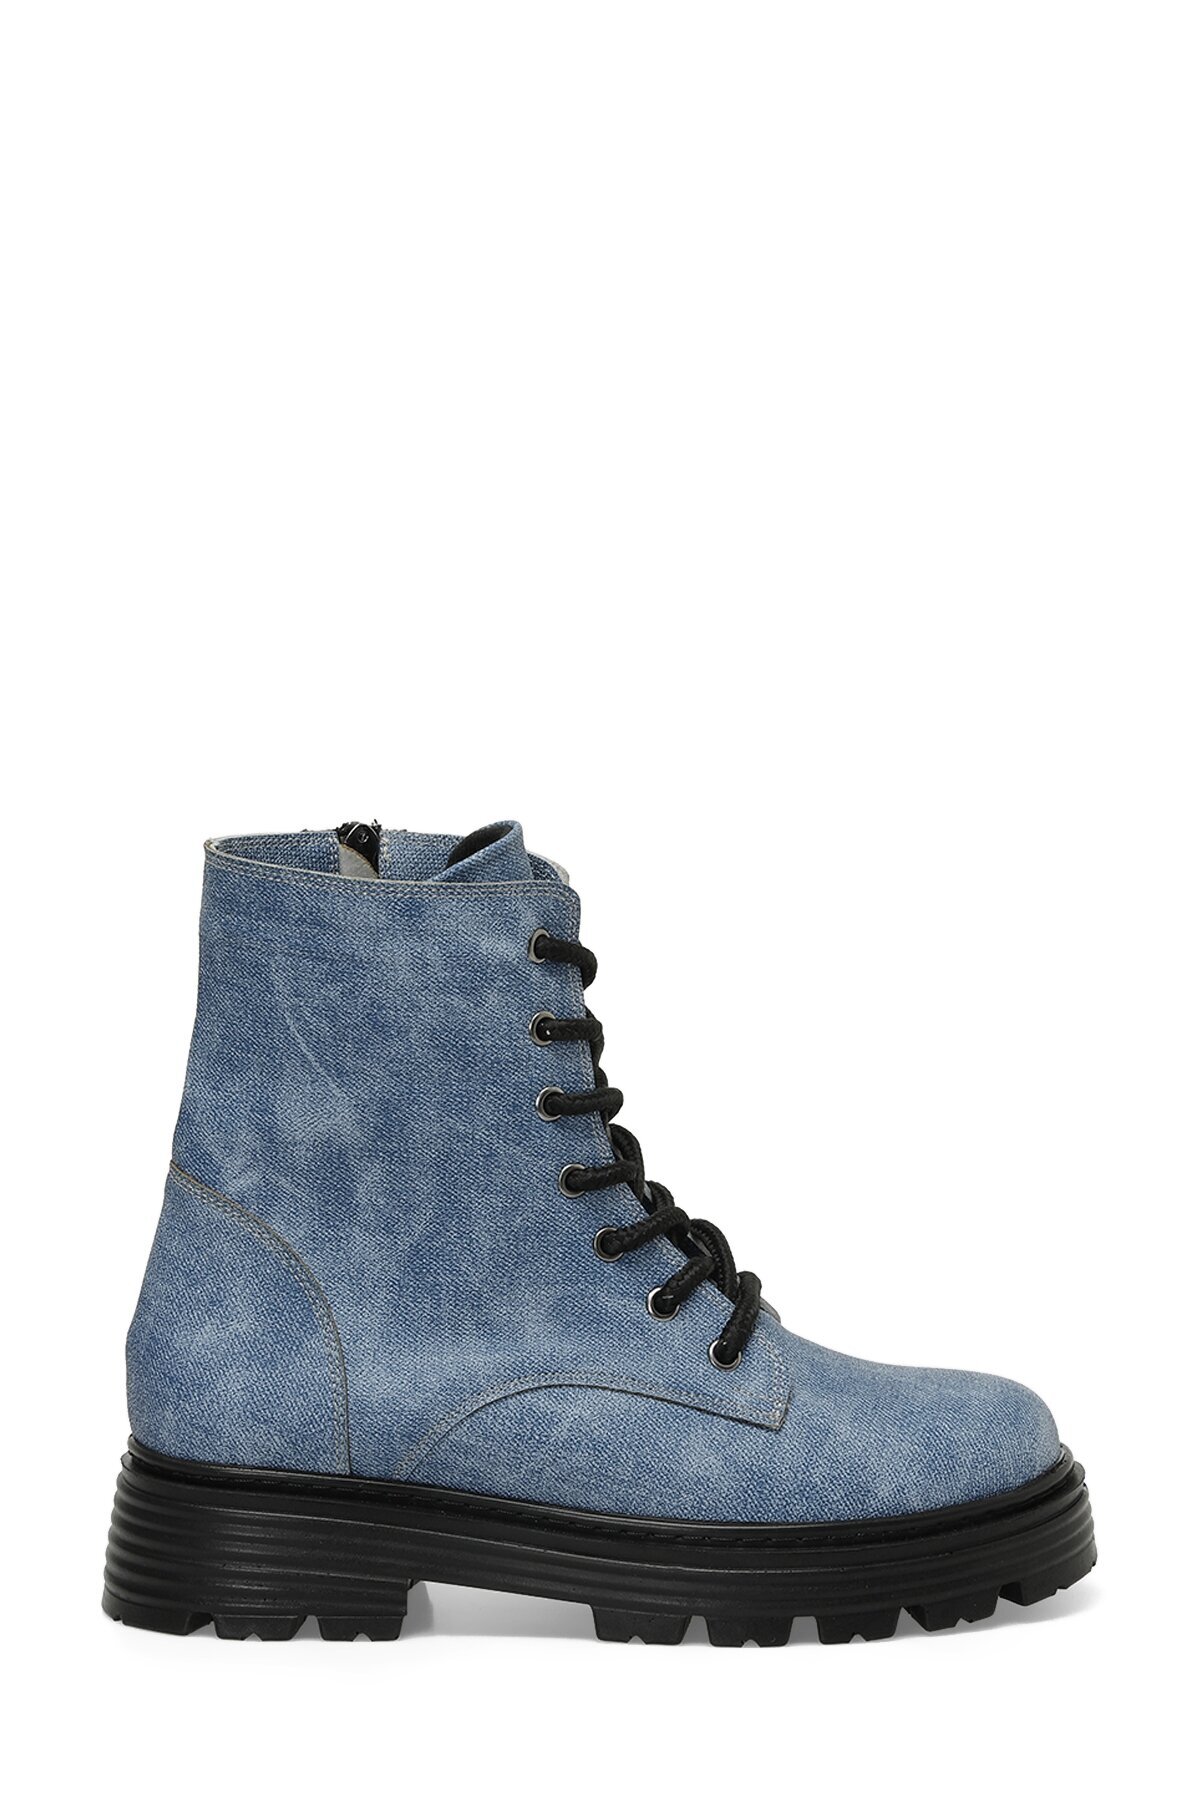 Levně Butigo Blue Women's Boots